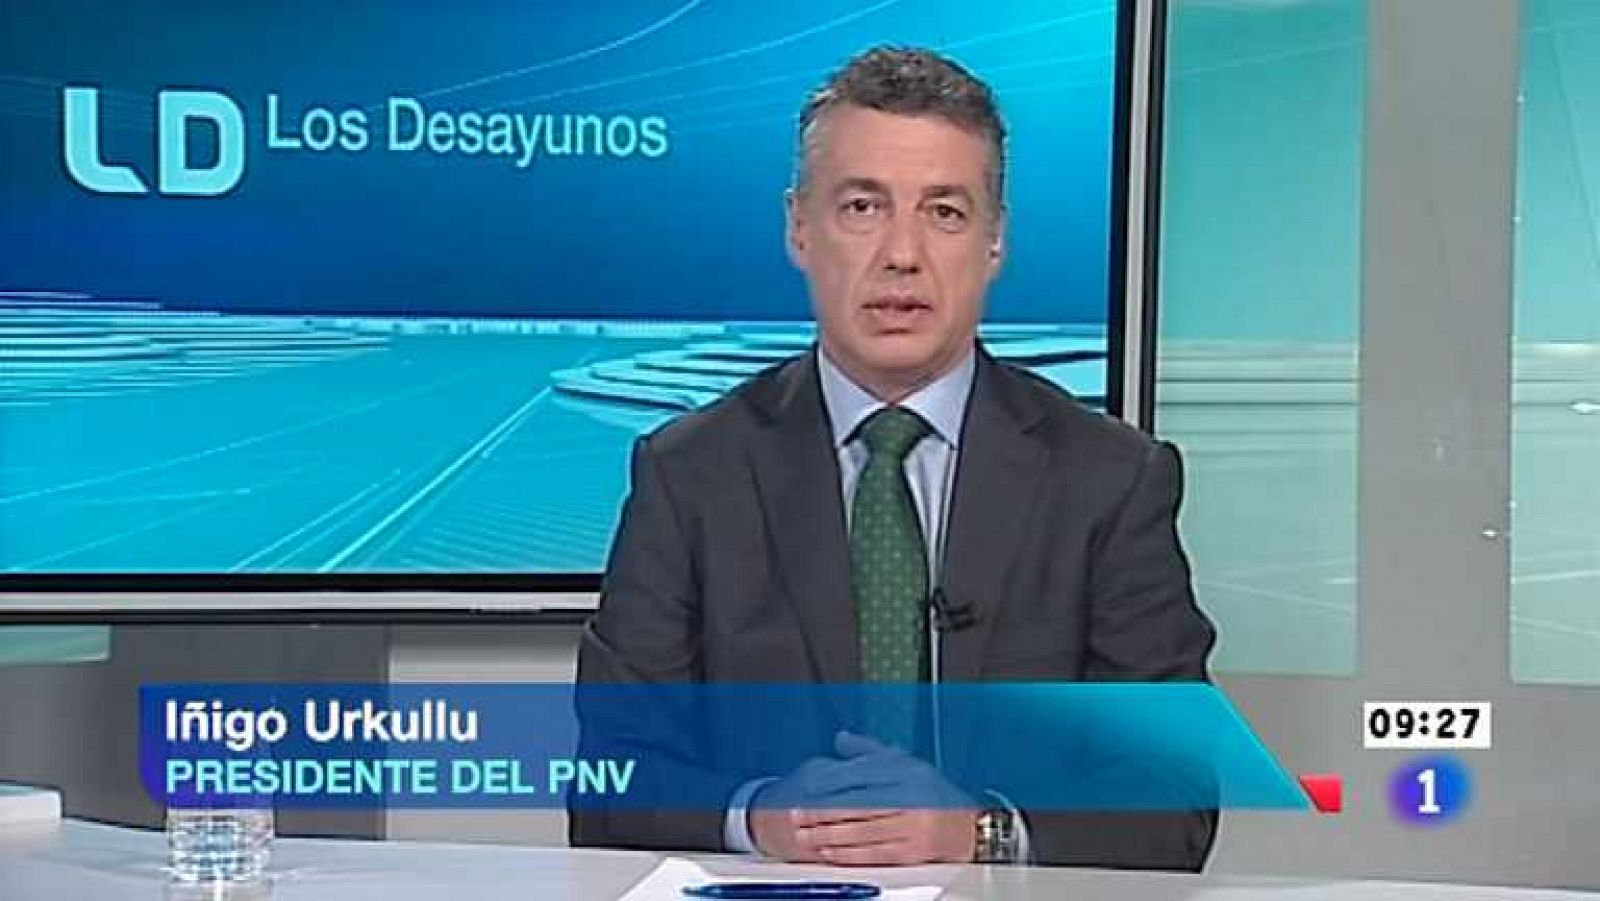 Los desayunos de TVE - Iñigo Urkullu, presidente del PNV